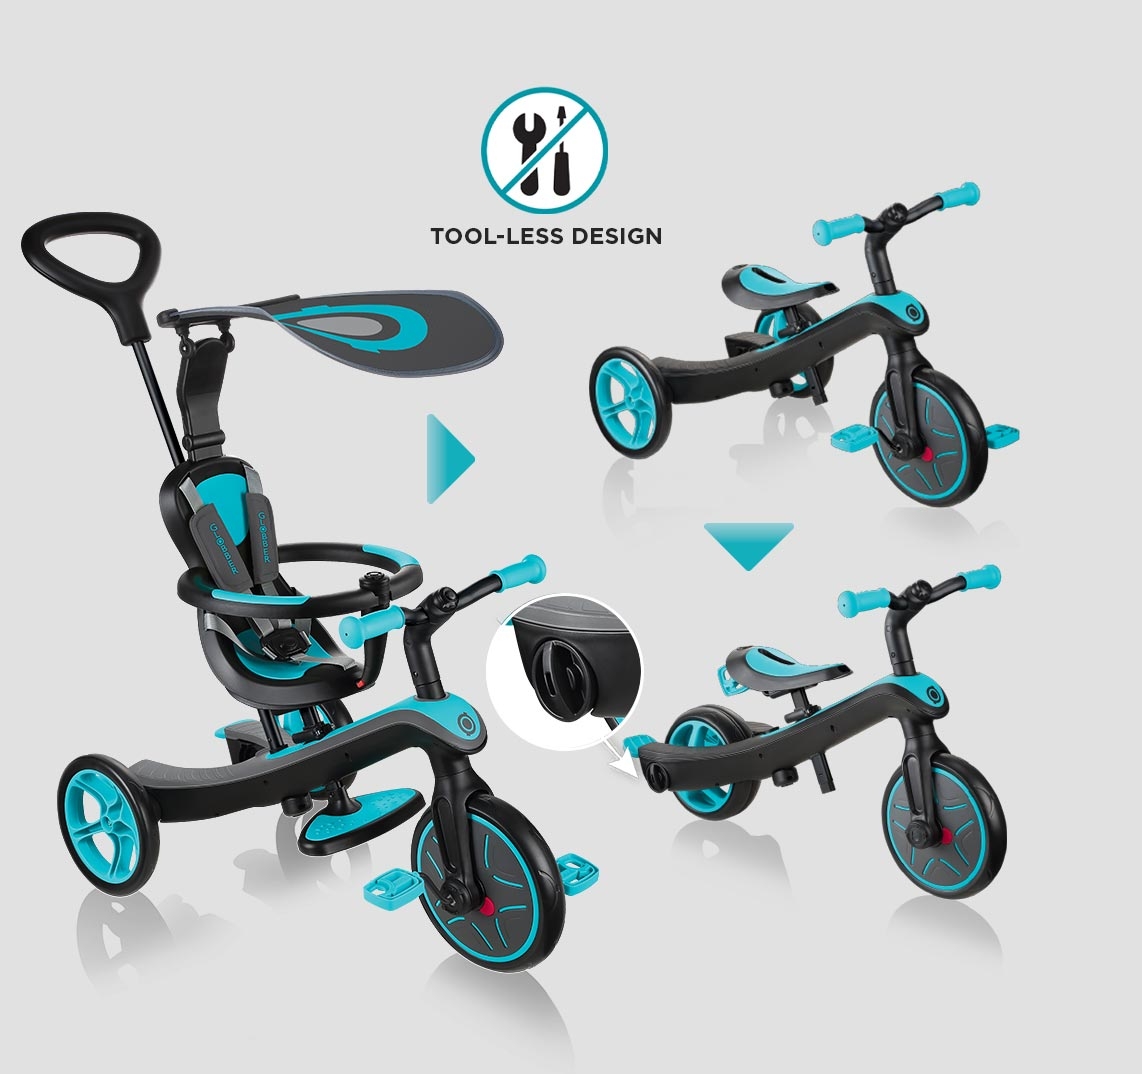 Un diseño de triciclo 100% sin herramientas para transformar fácilmente el producto